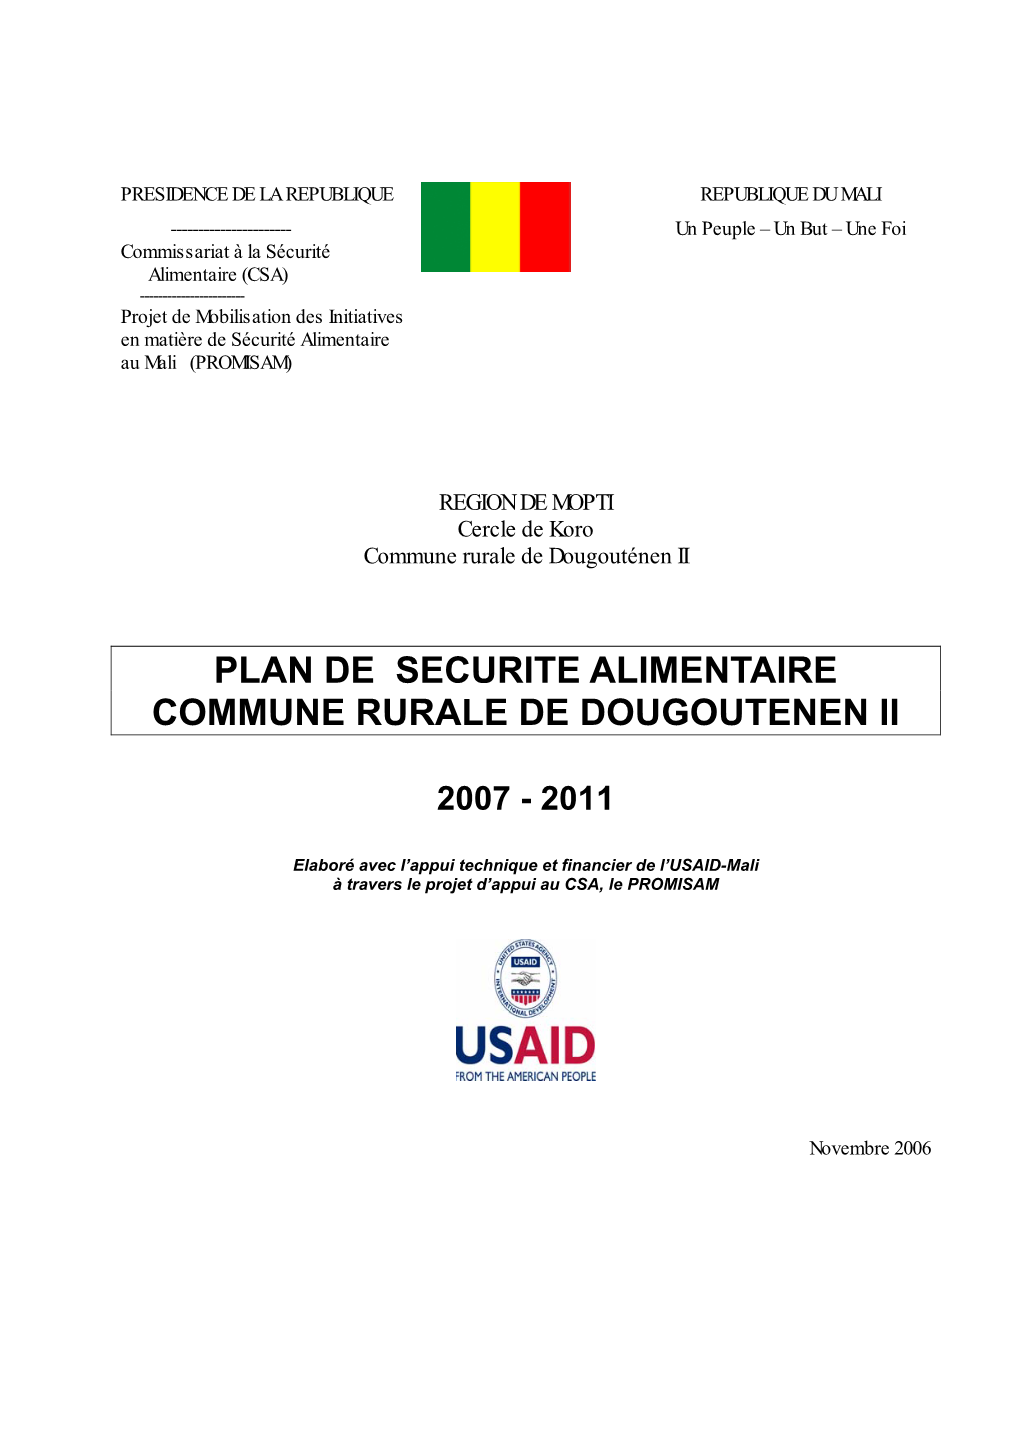 Plan De Securite Alimentaire Commune Rurale De Dougoutenen Ii 2007